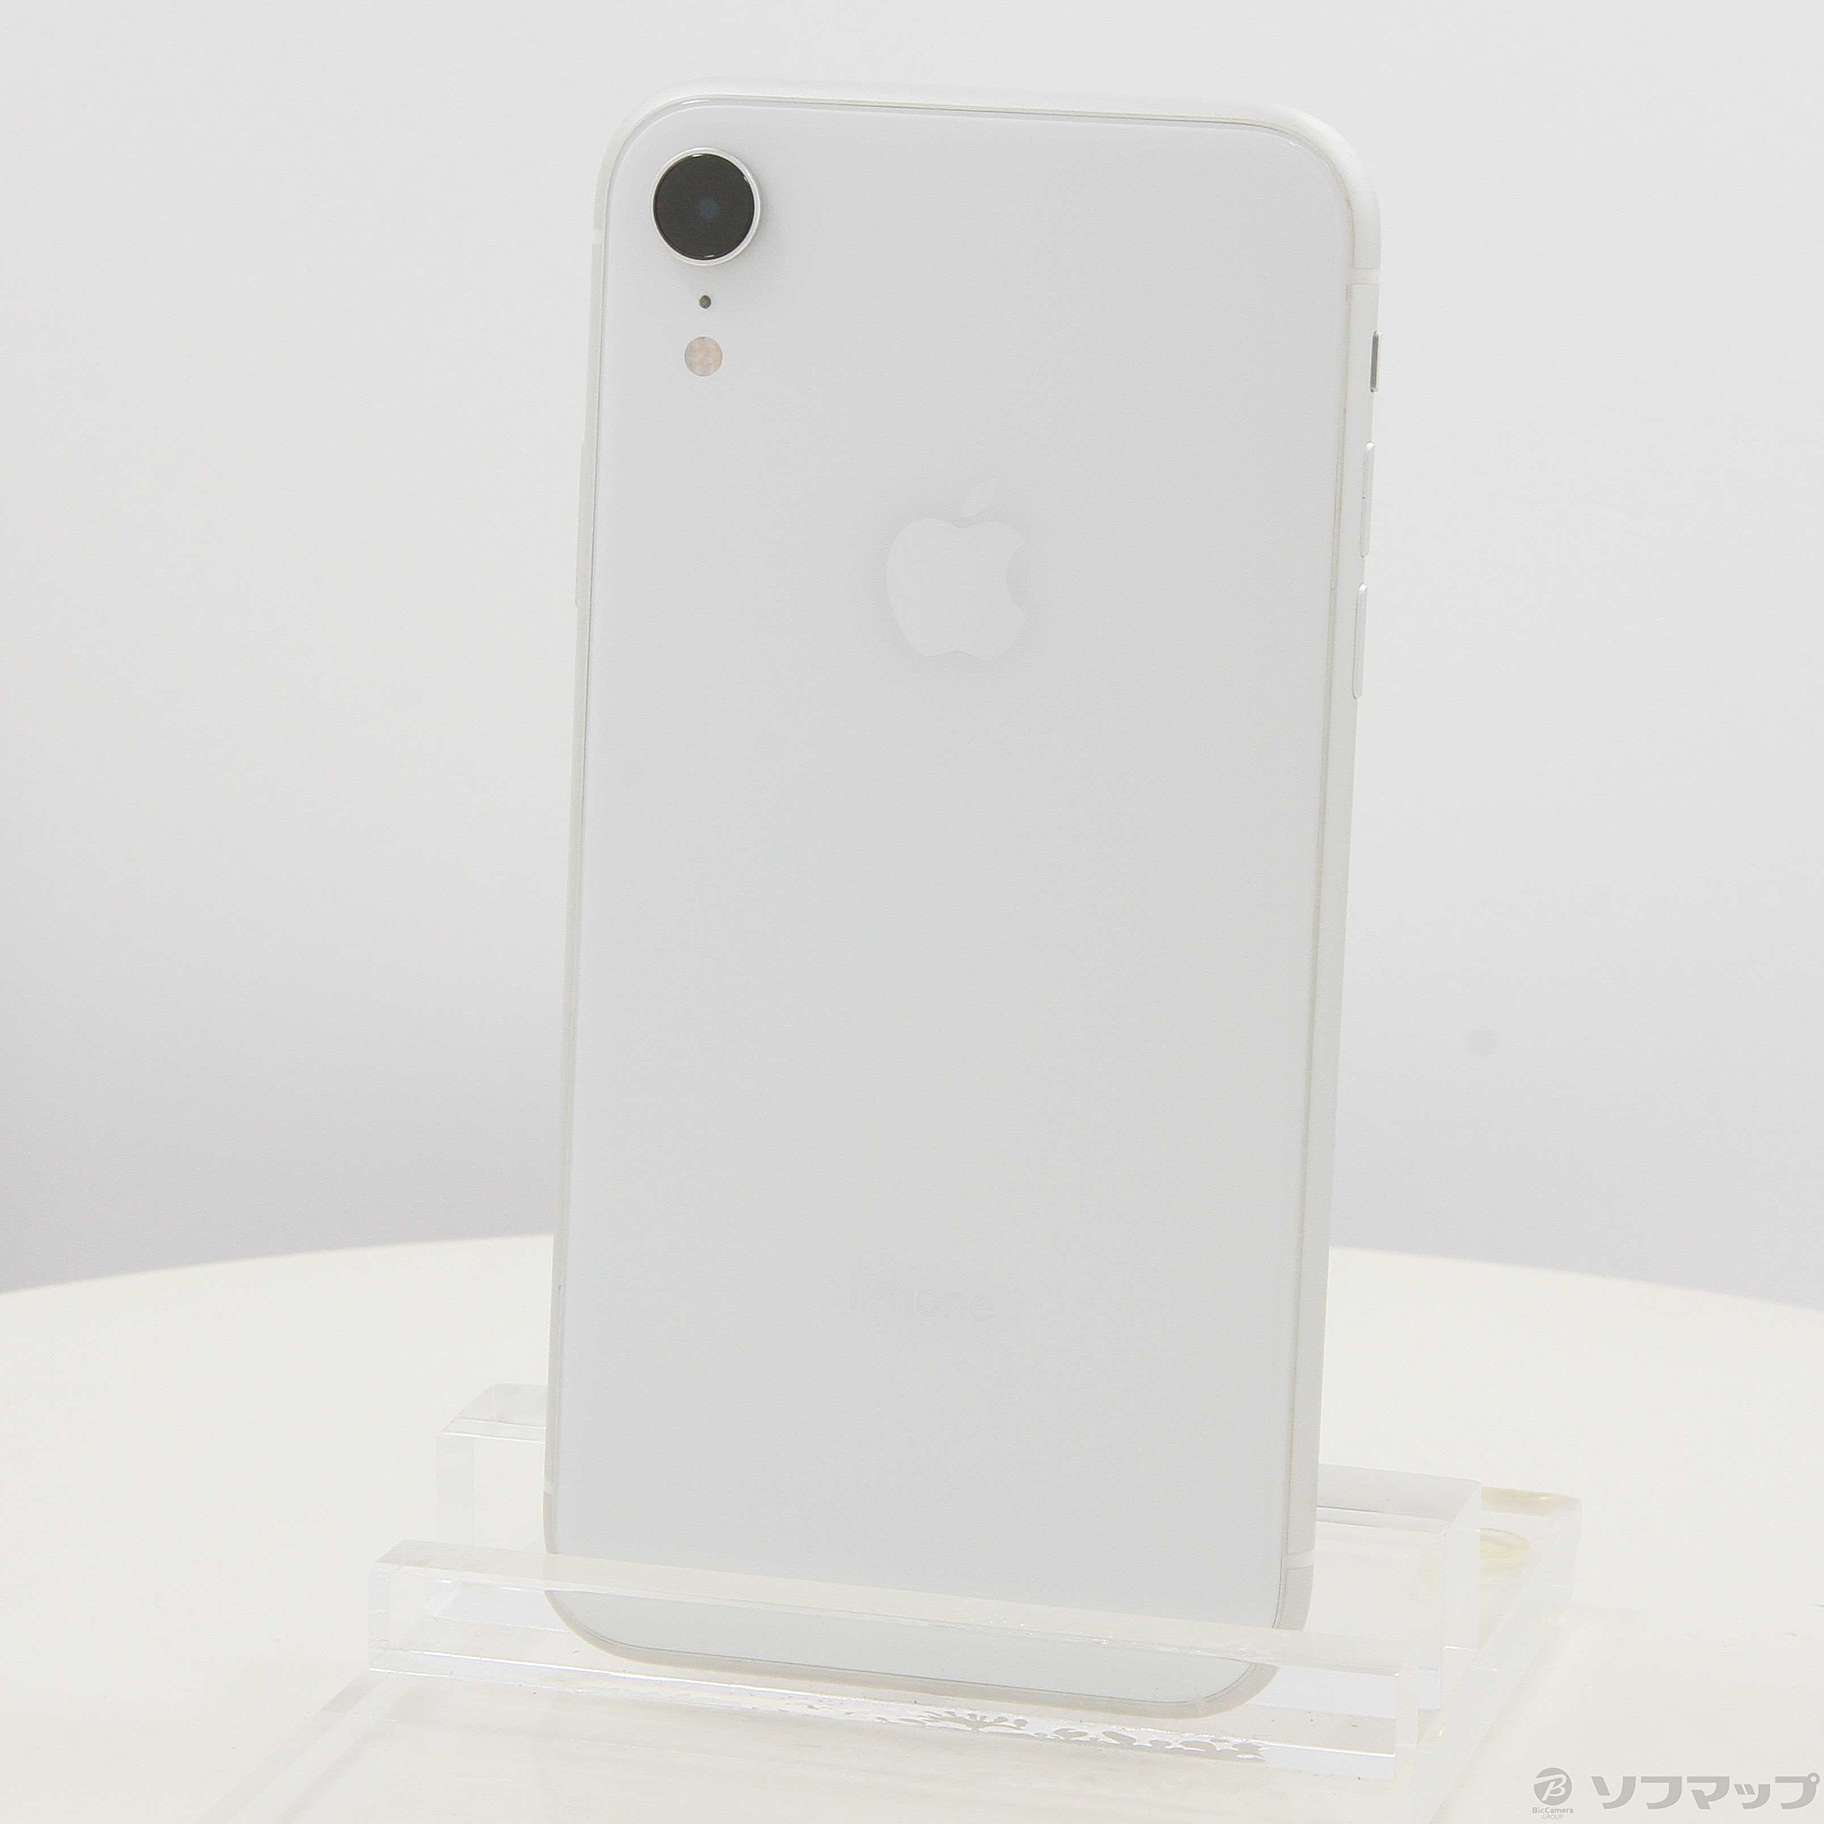 iPhone XR white 64gb SIMフリー